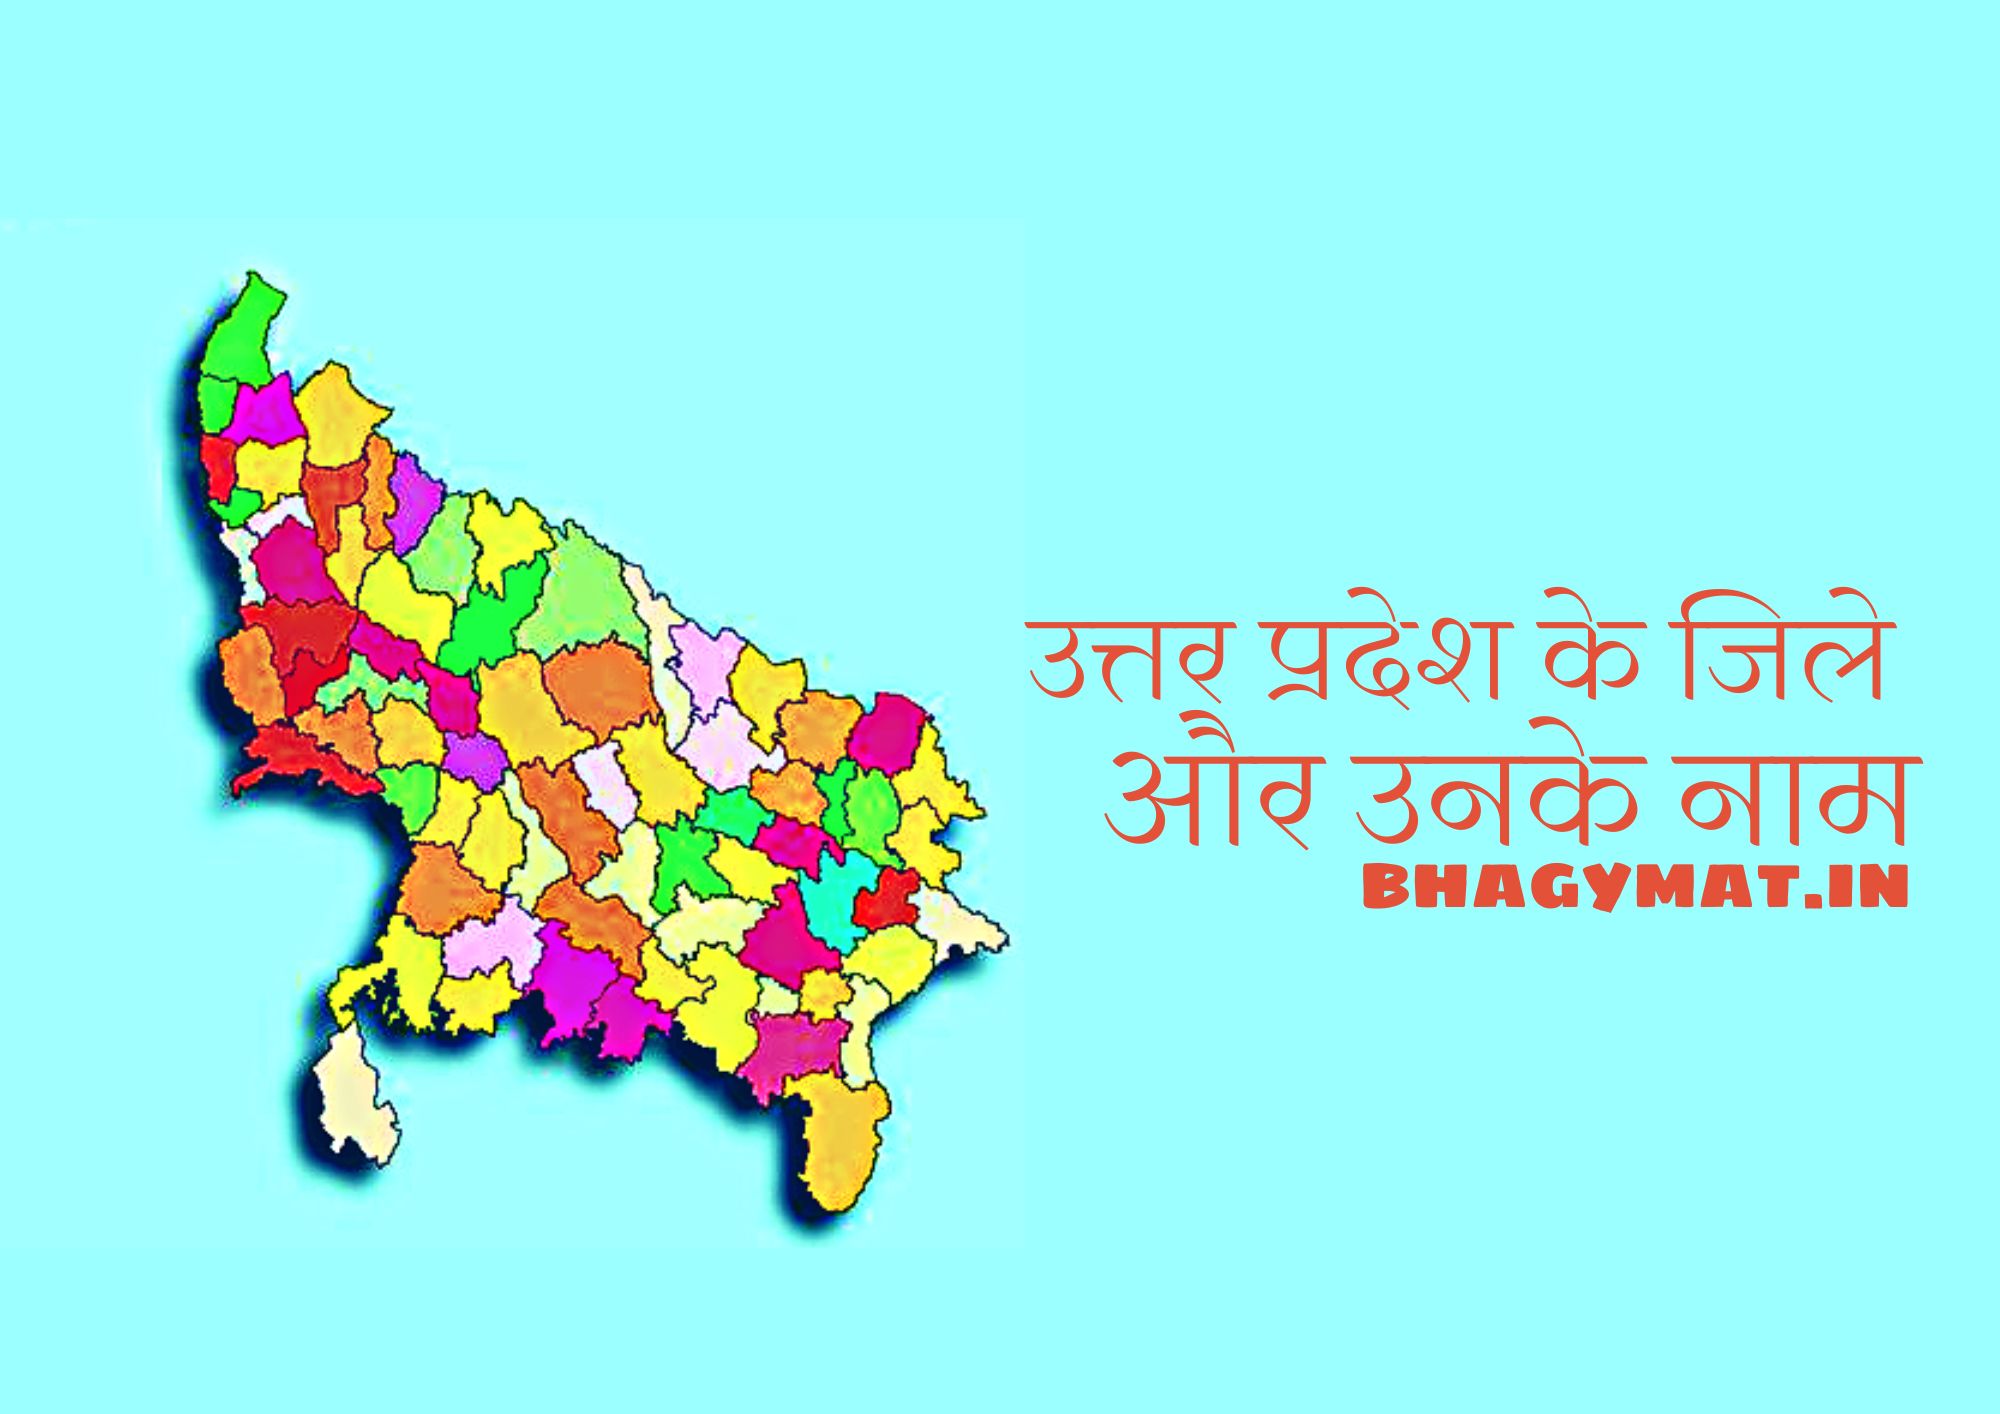 उत्तर प्रदेश में कितने जिले हैं - Uttar Pradesh Me Kitne Jile Hai